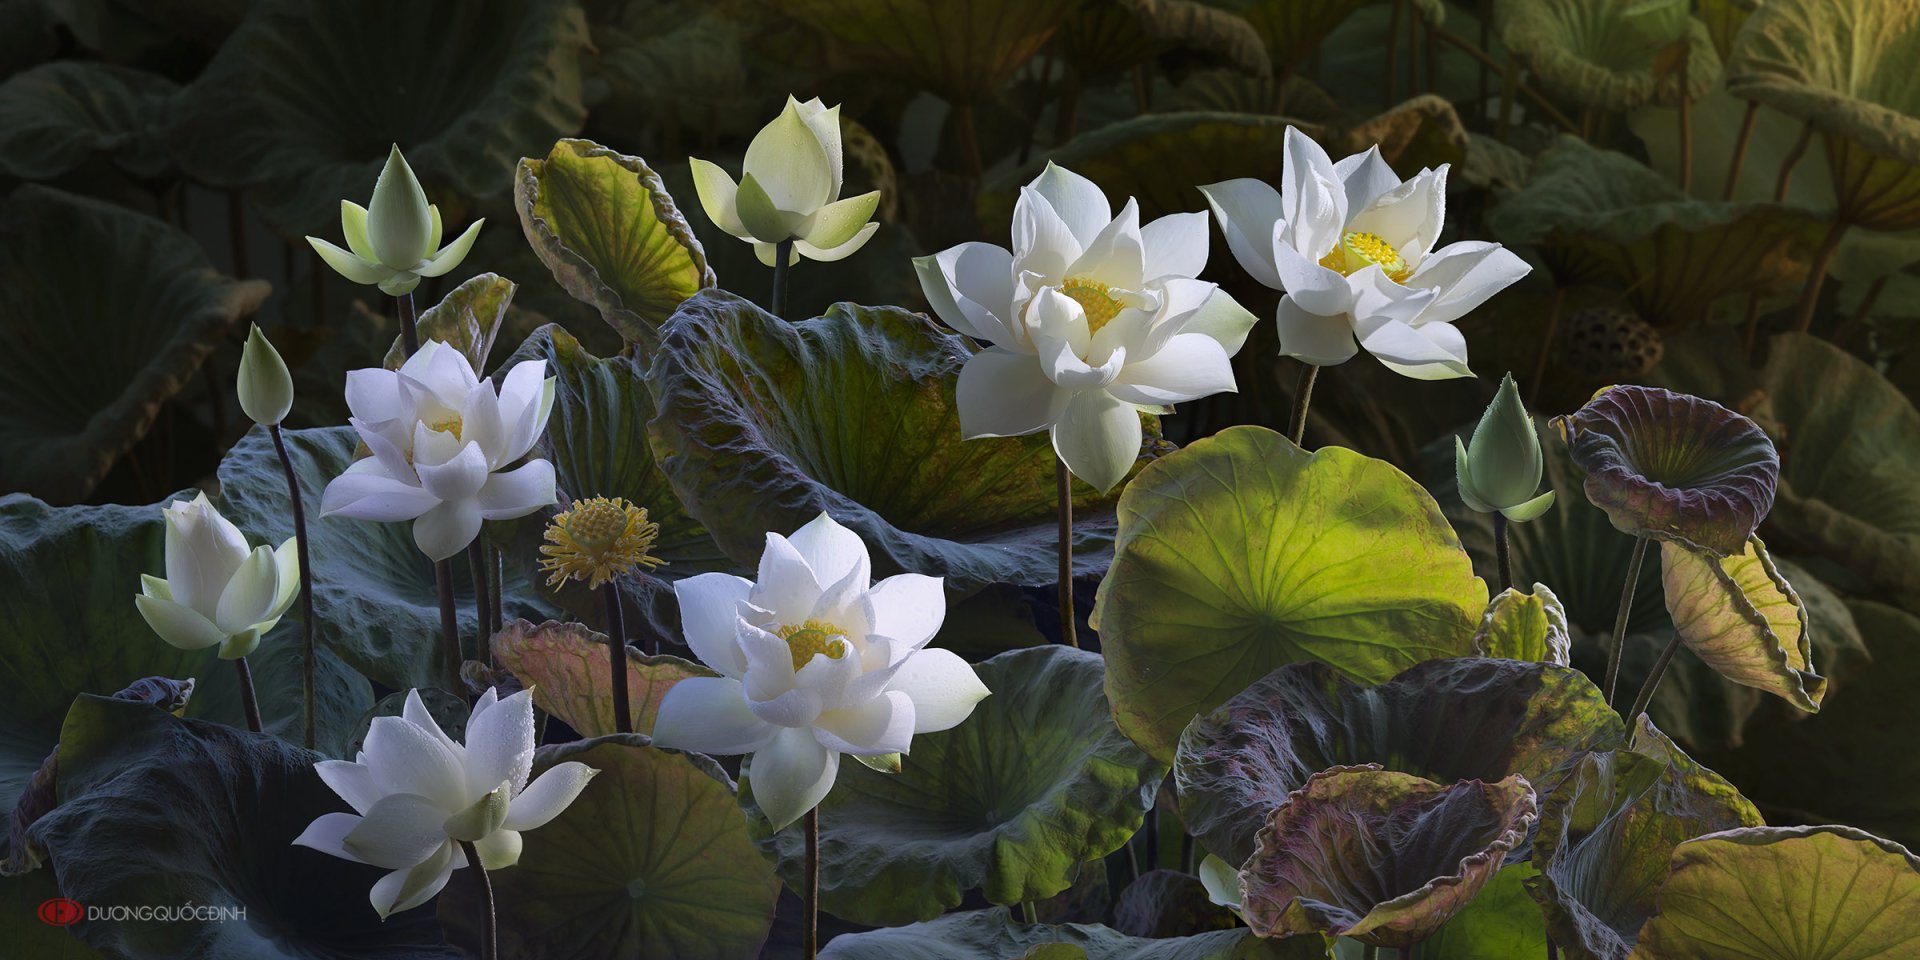 Hoa sen trắng: Bạn đã từng ngắm nhìn hoa sen trắng tuyệt đẹp chưa? Nó được biết đến như một biểu tượng của sự thanh tịnh và sự hoàn hảo. Hãy cảm nhận tinh túy của hoa sen và bình tĩnh bất kể ở đâu bạn đang ở với ảnh này!